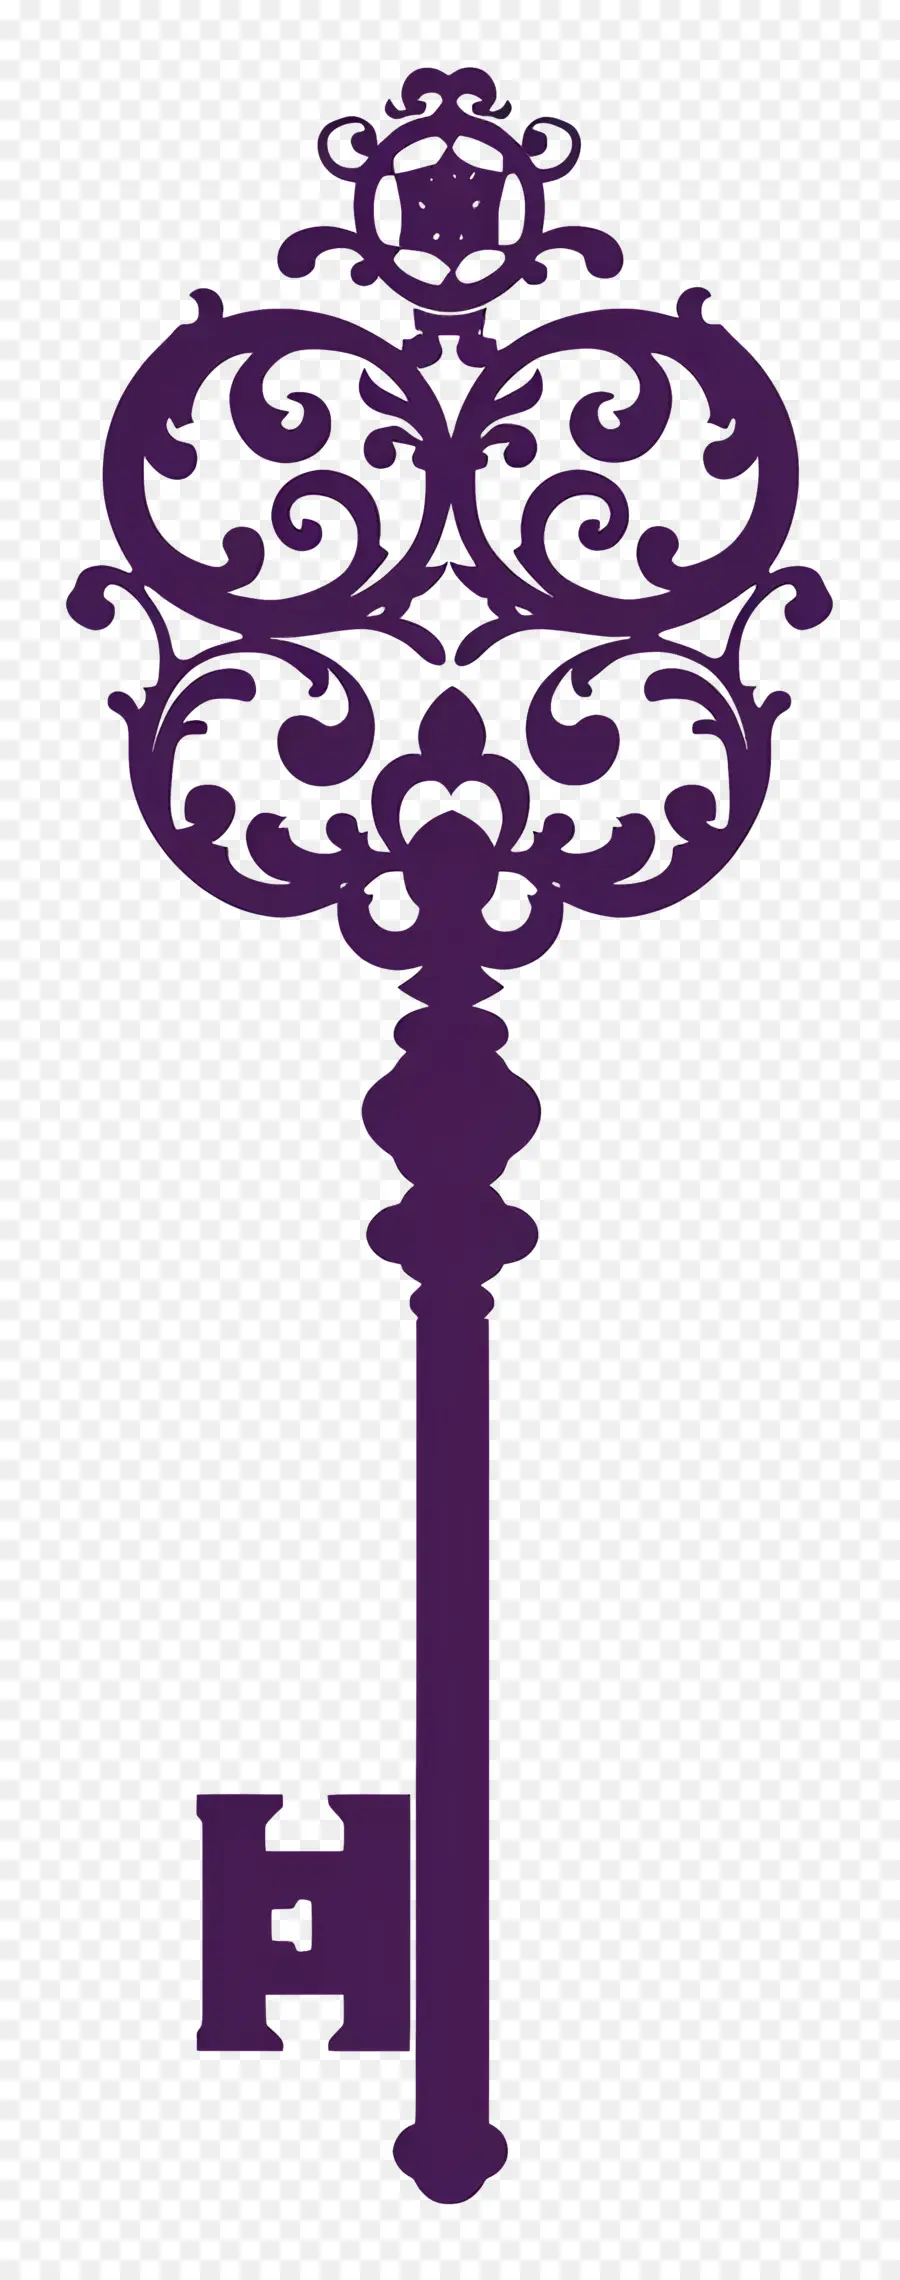 key ornate key gothic design carved key fairytale key